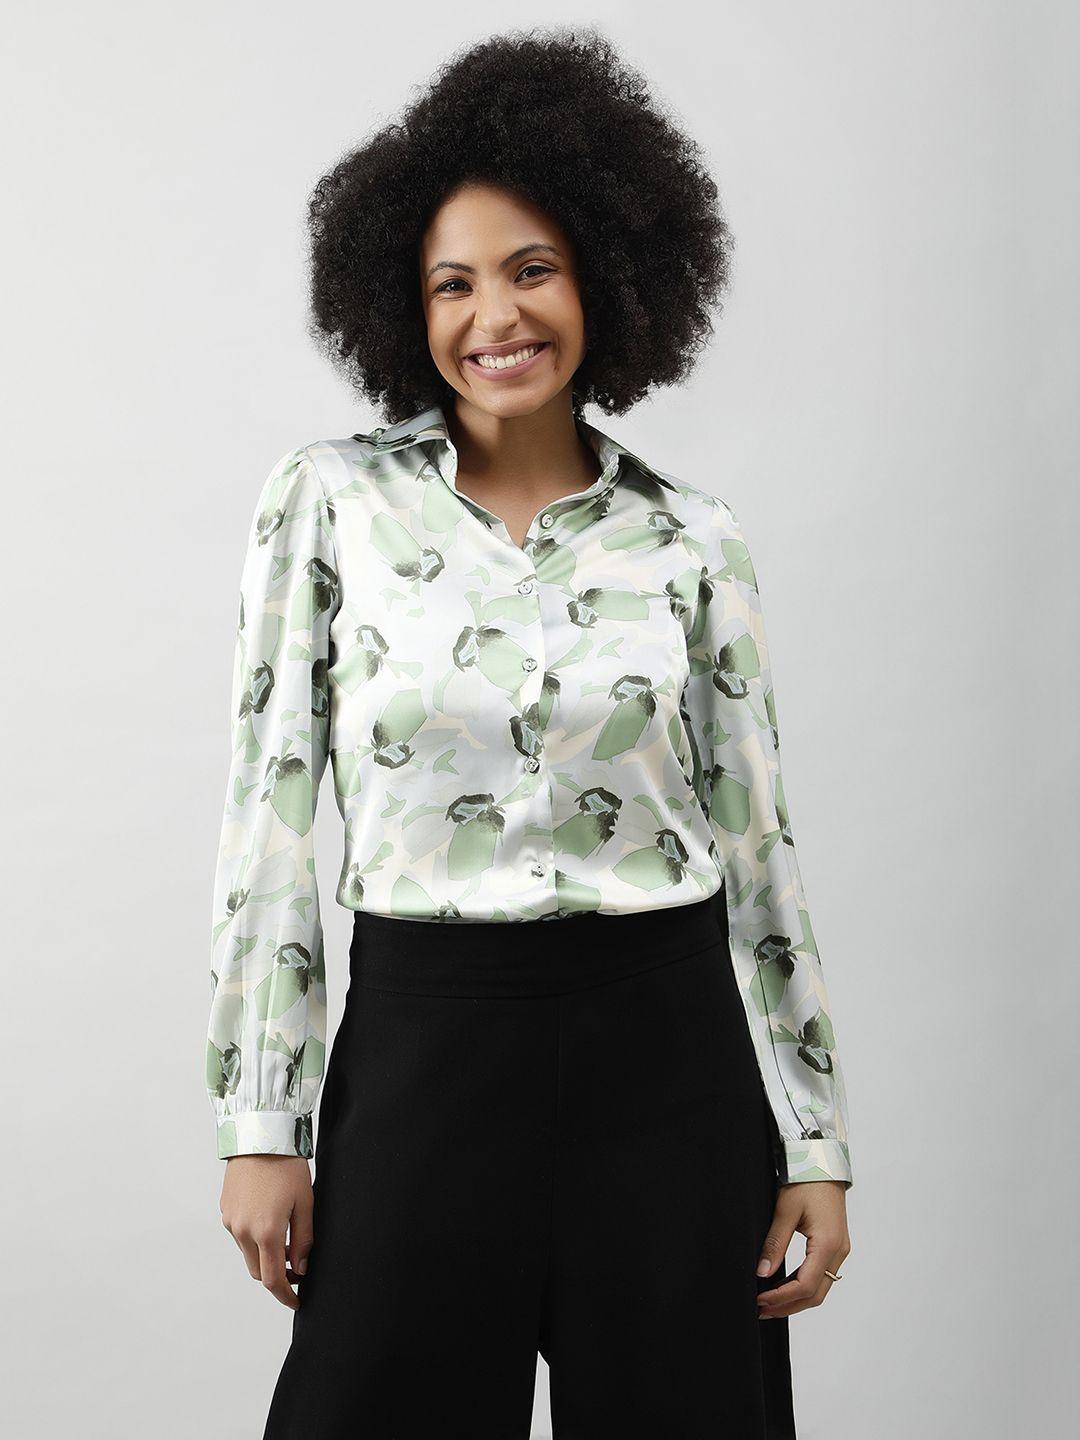 purys women smart opaque printed casual shirt